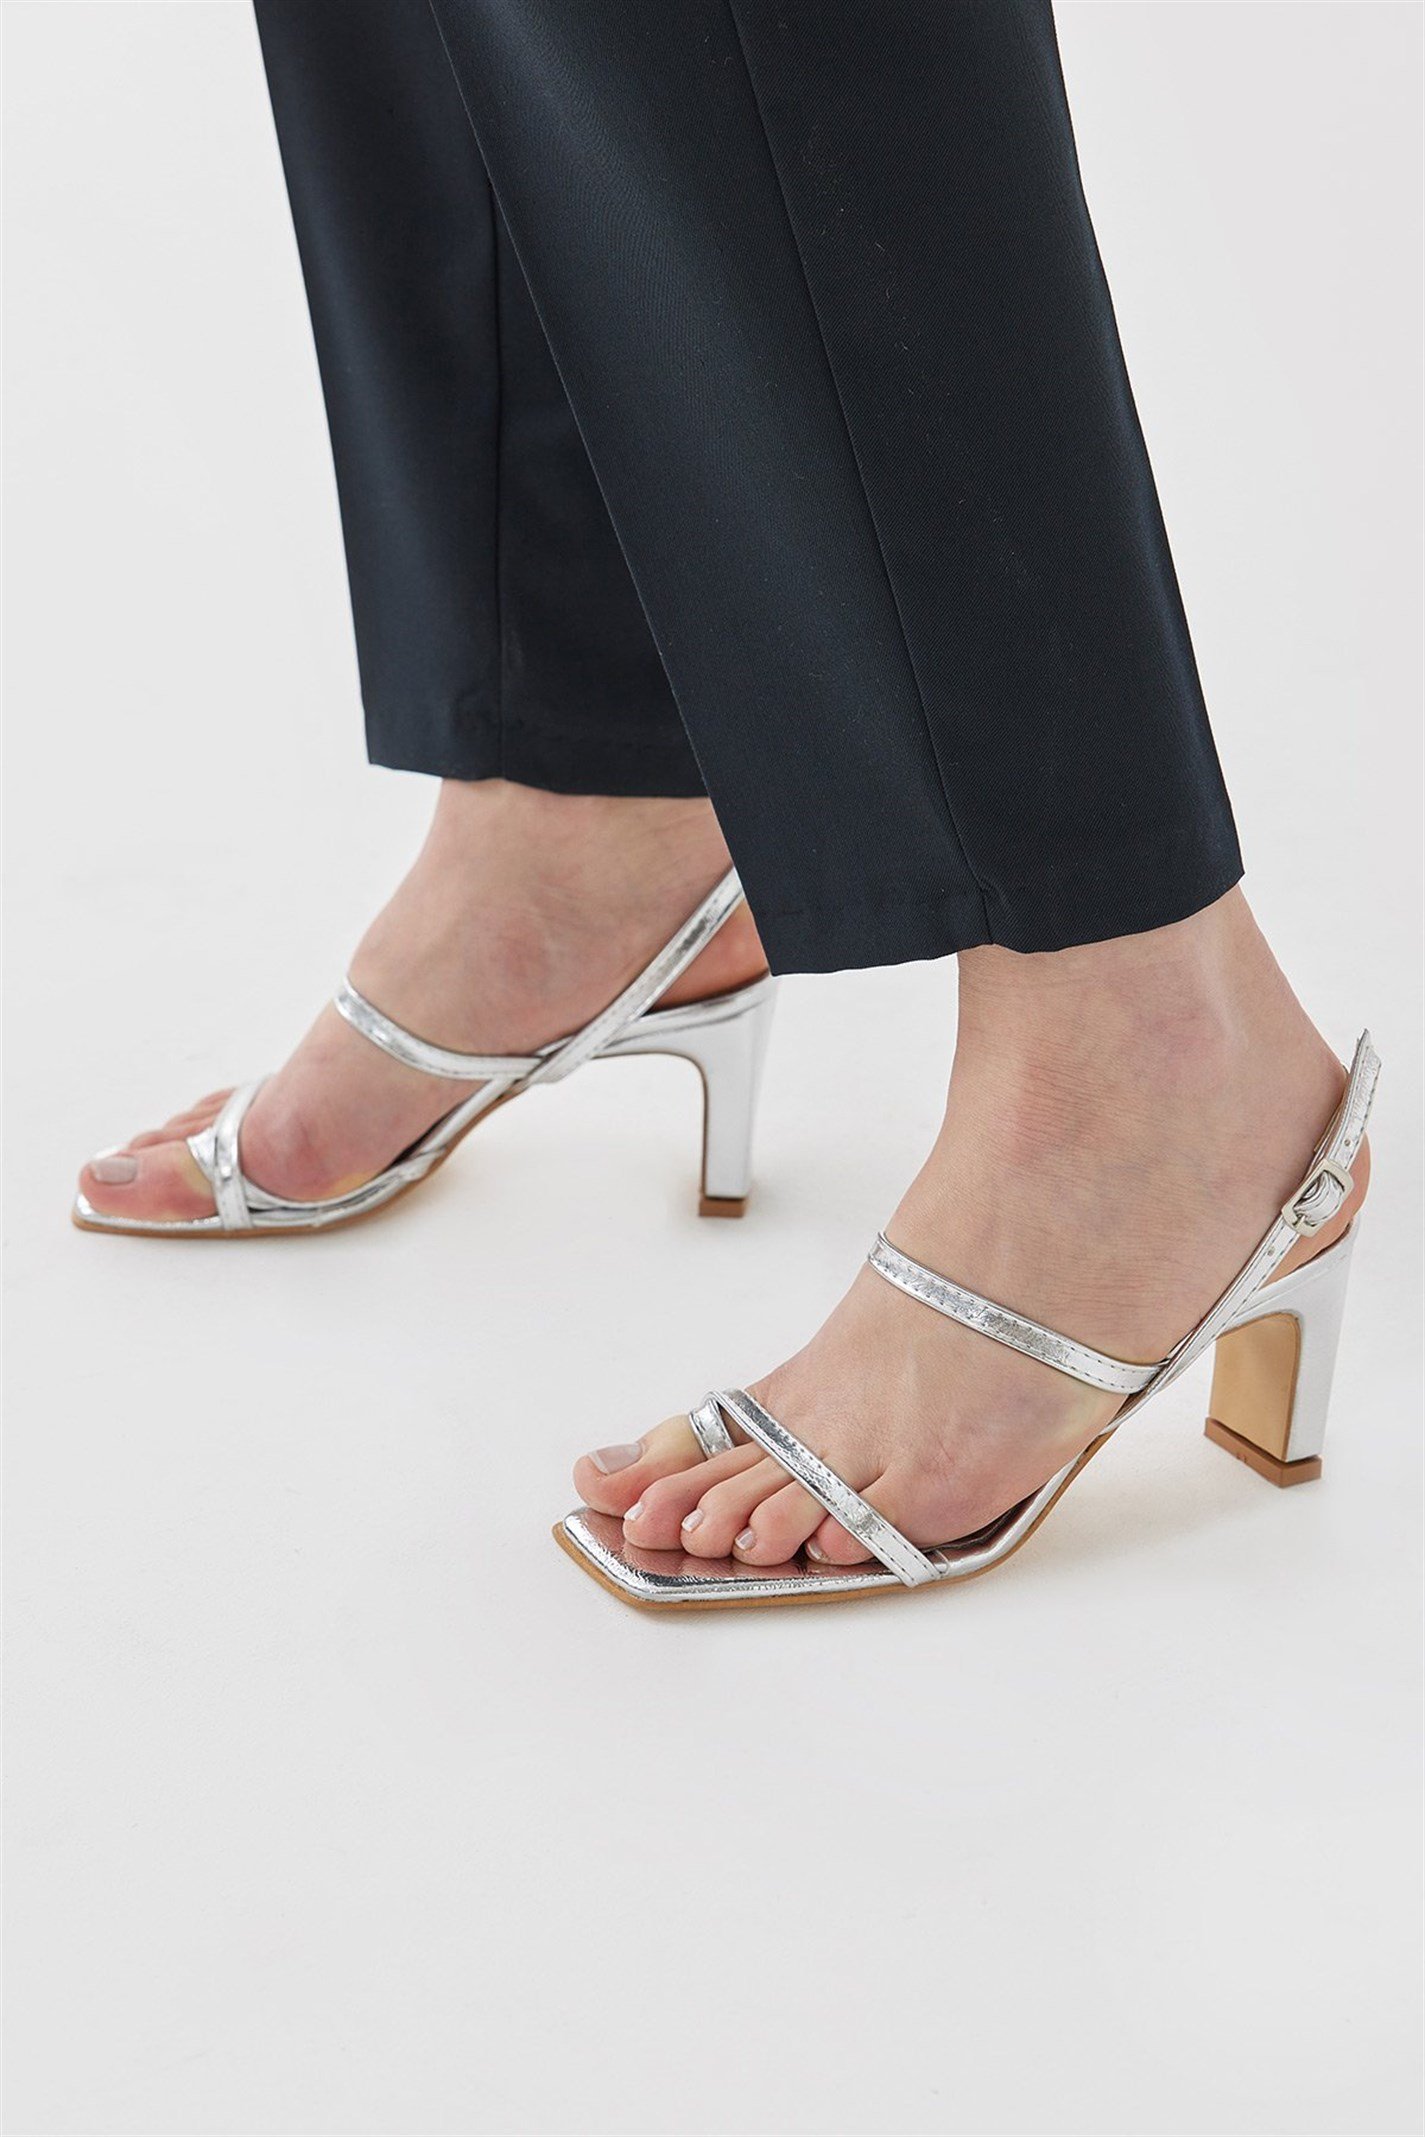 Gümüş İnce Bantlı Topuklu Ayakkabı | Suud Collection